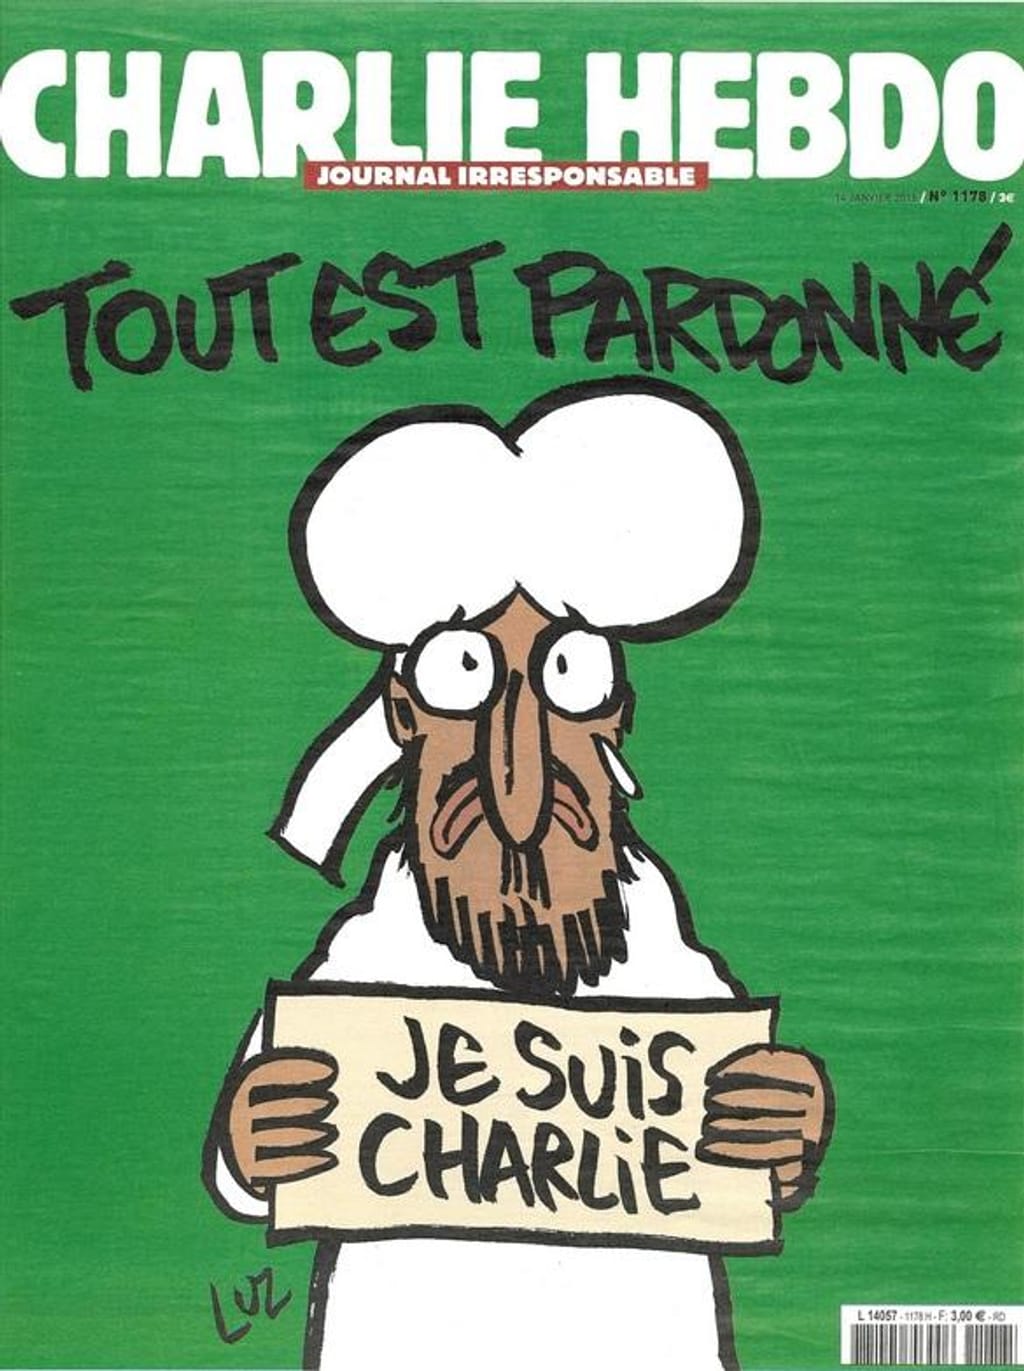 Capa do primeiro número do Charlie Hebdo após o ataque